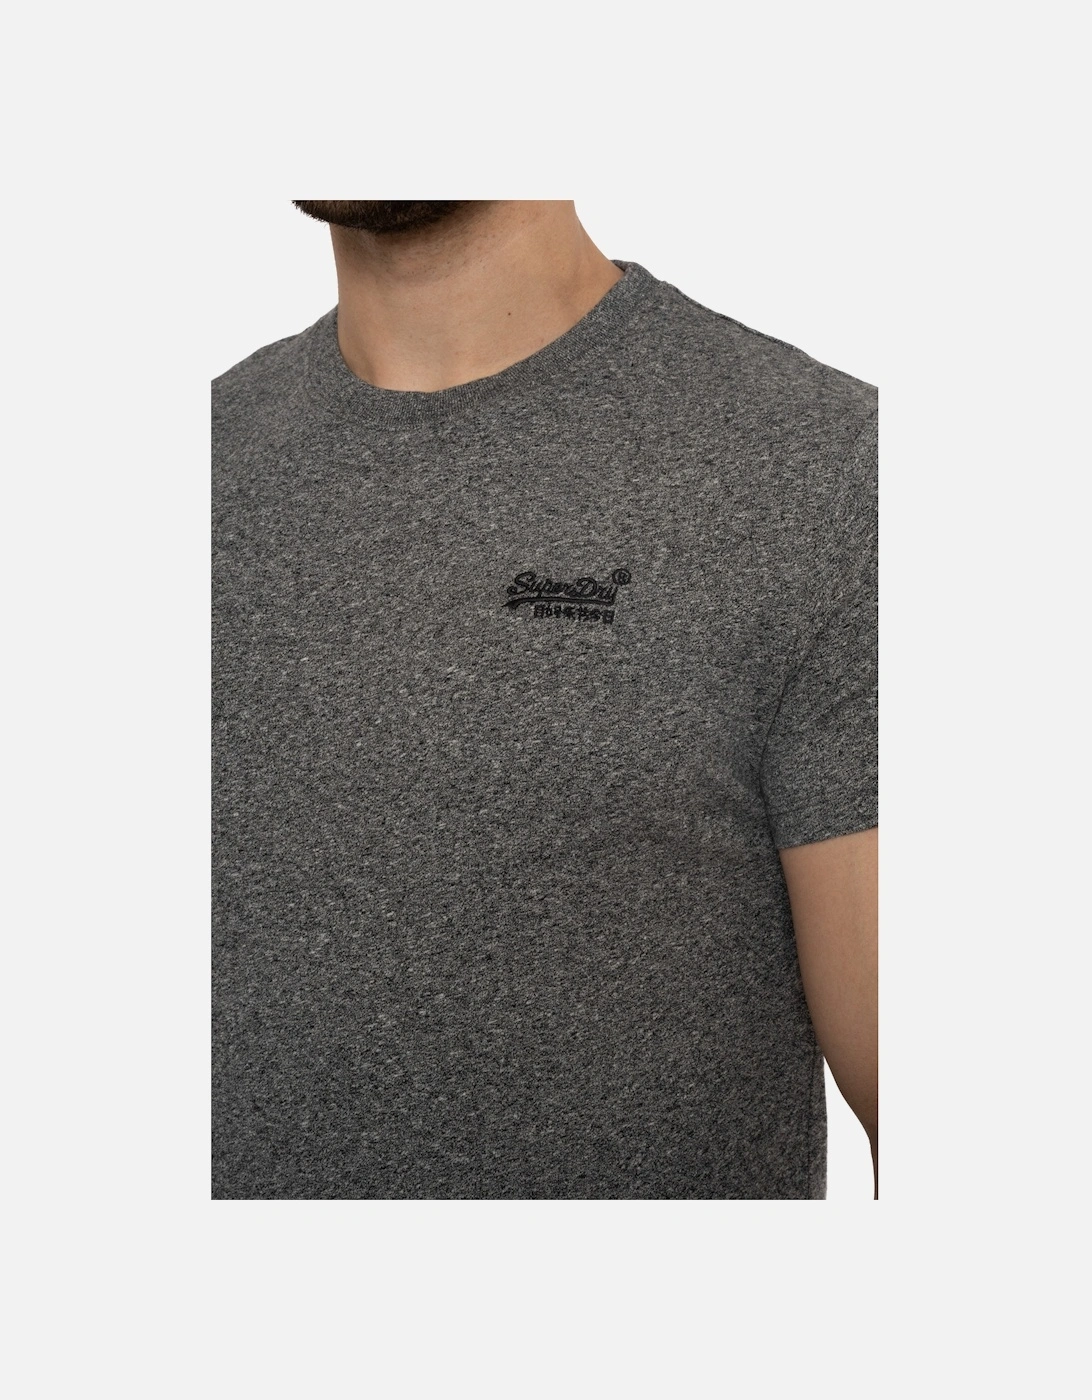 Mens Vintage Embroidered Logo T-Shirt (Black/Grey)